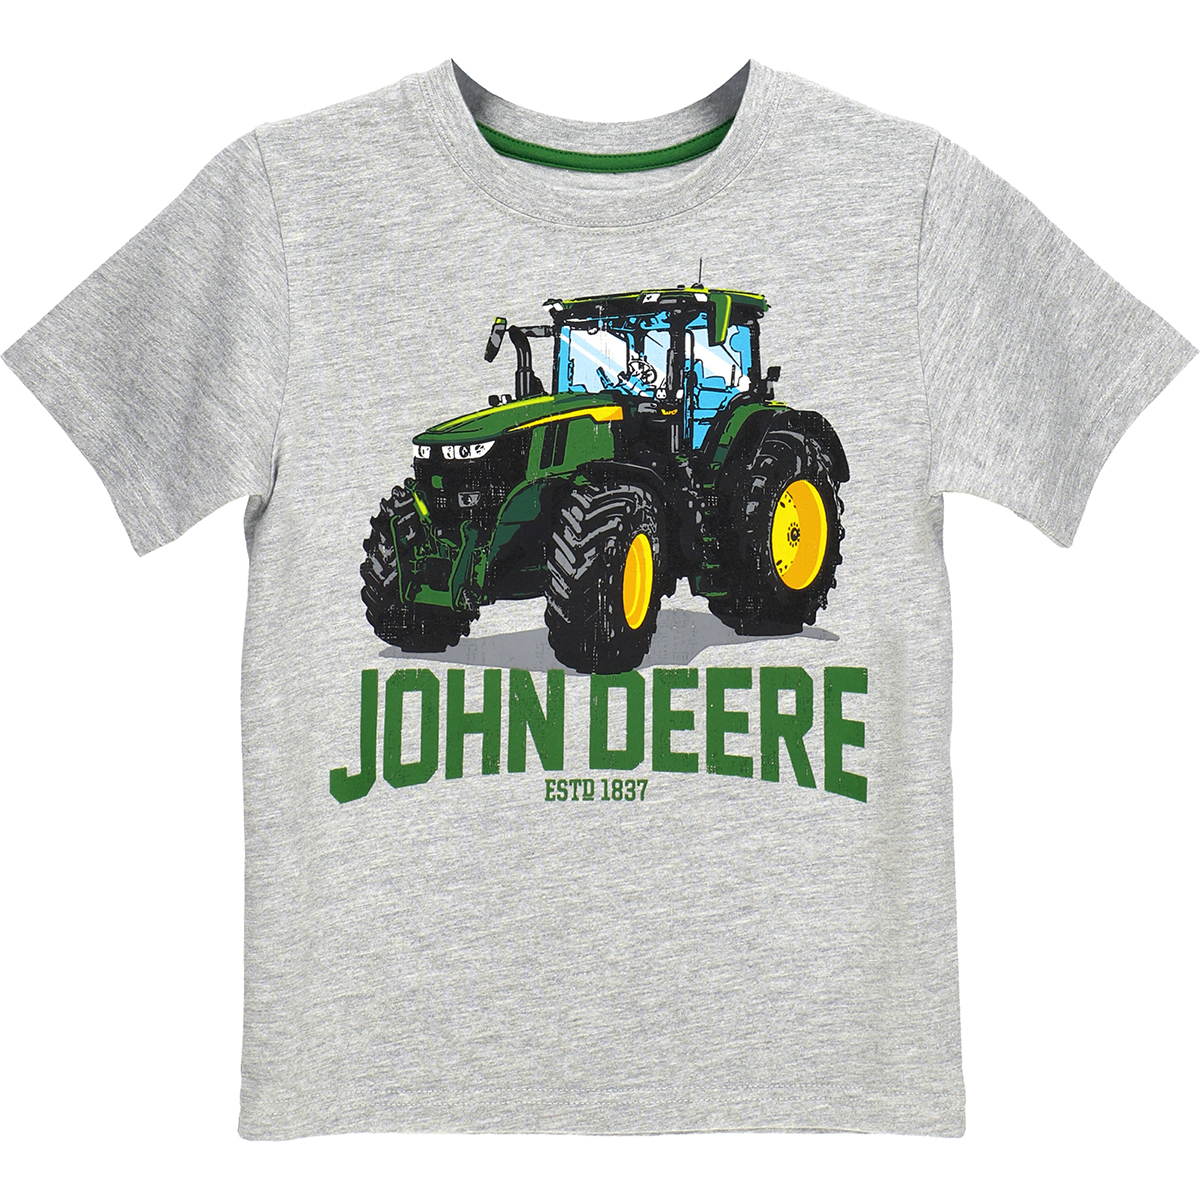 John Deere Tractor Est. 1837 T-Shirt